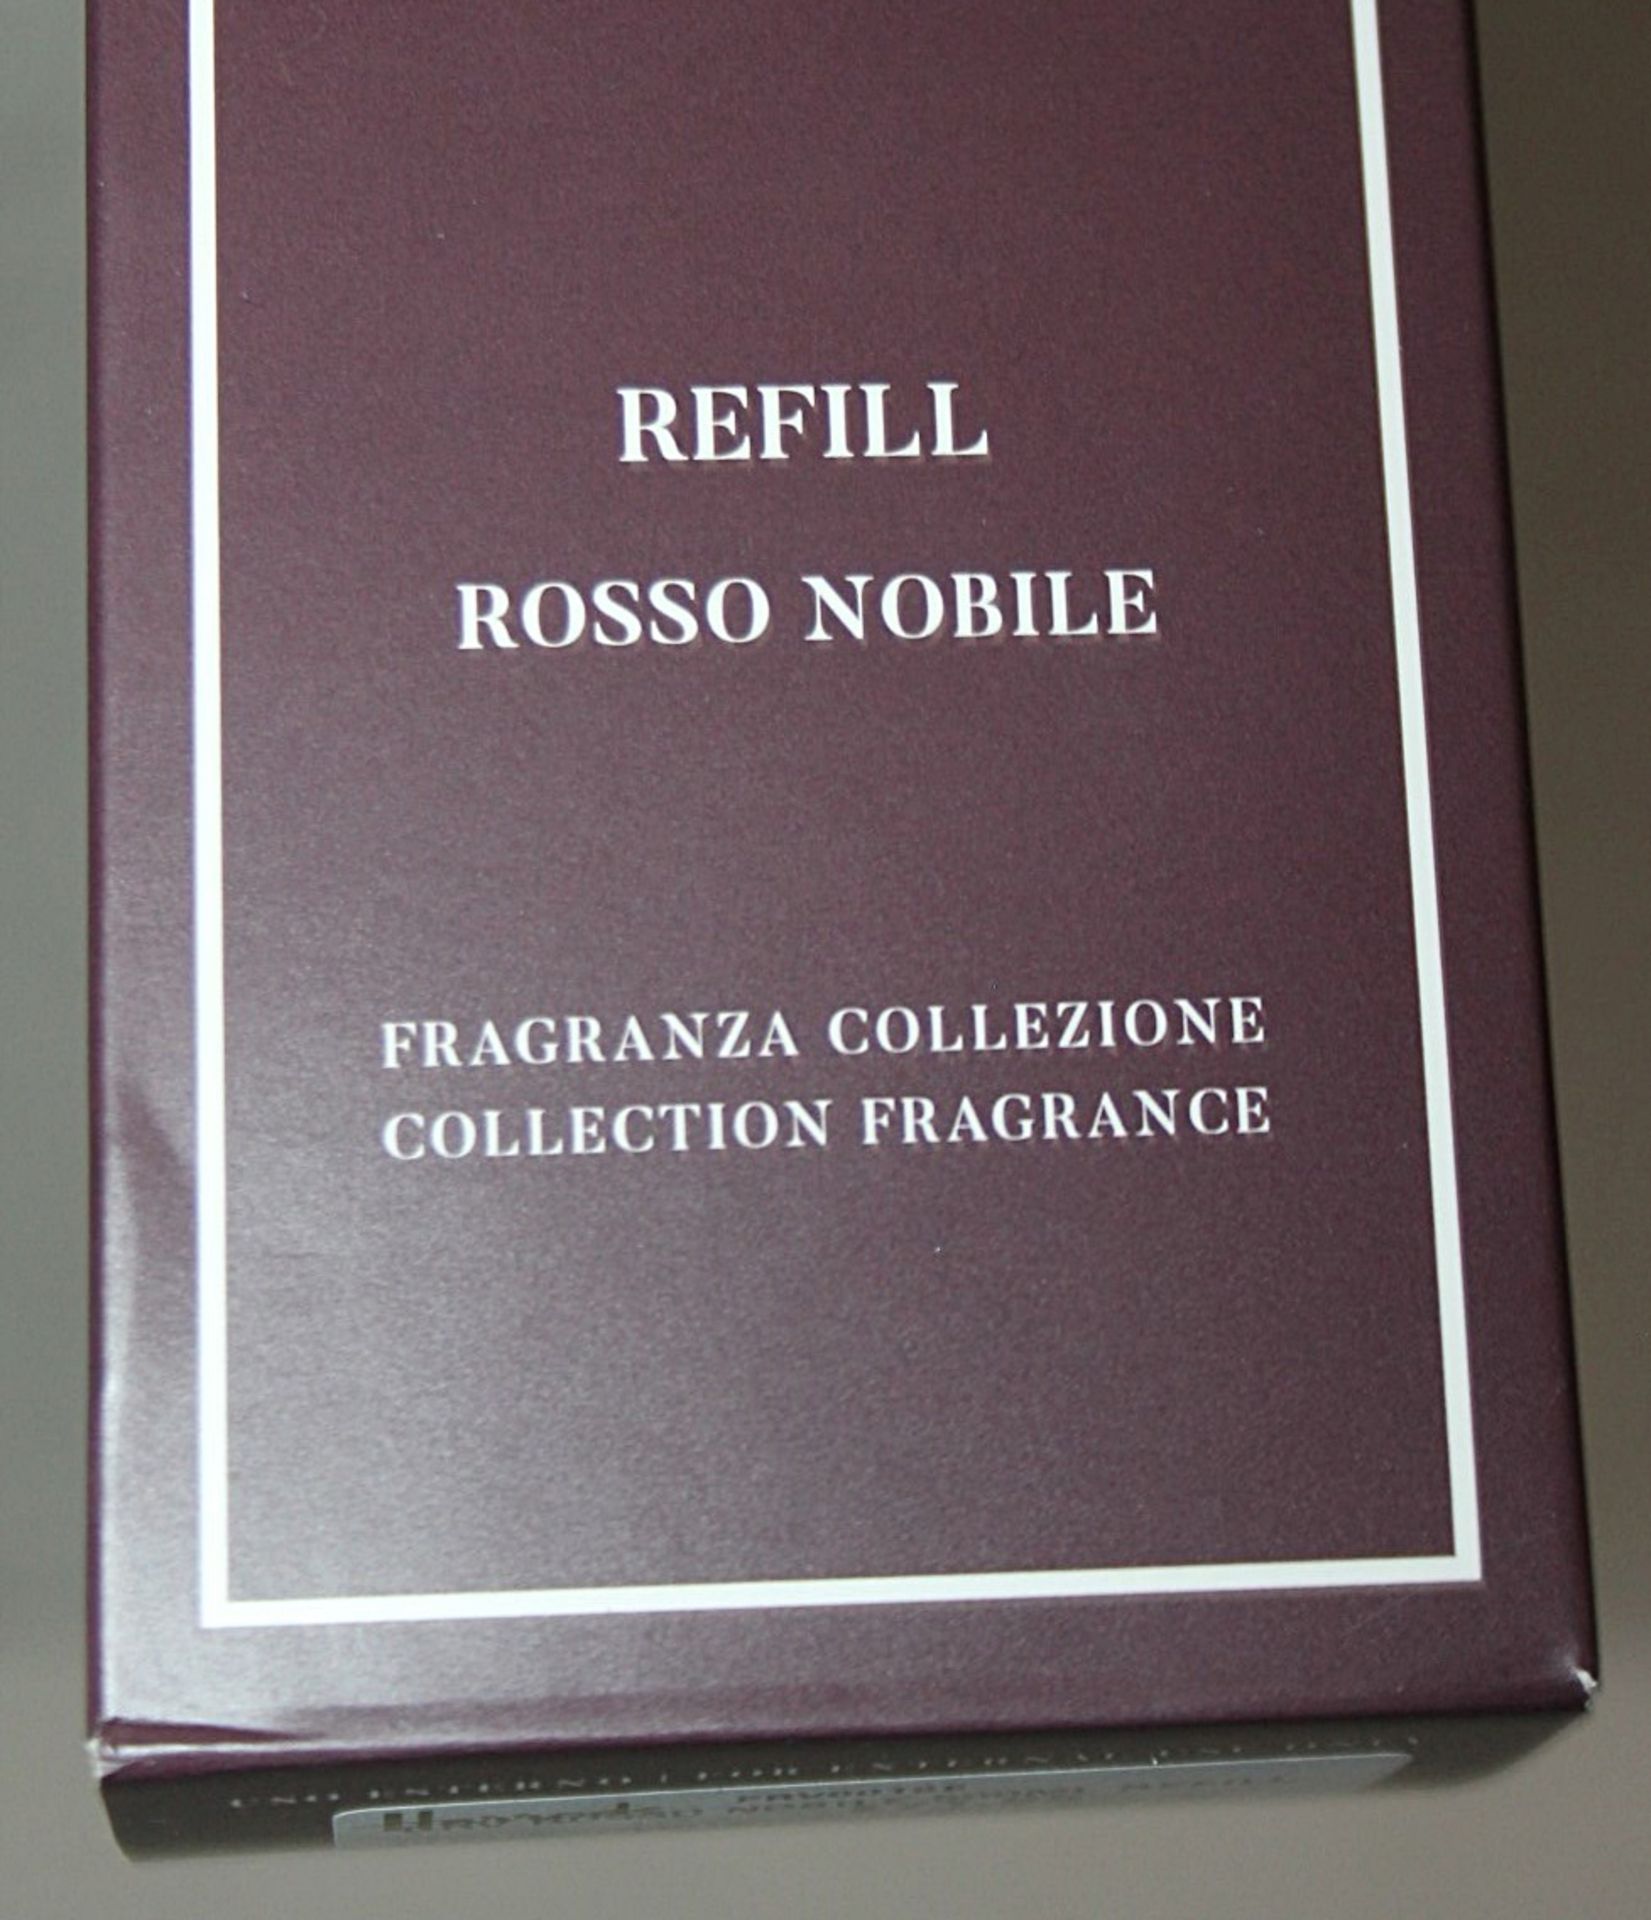 1 x DR. VRANJES FIRENZE 'Rosso Nobile' Fragrance Refill (500ml) - Original Price £71.95 - Unused - Image 4 of 7